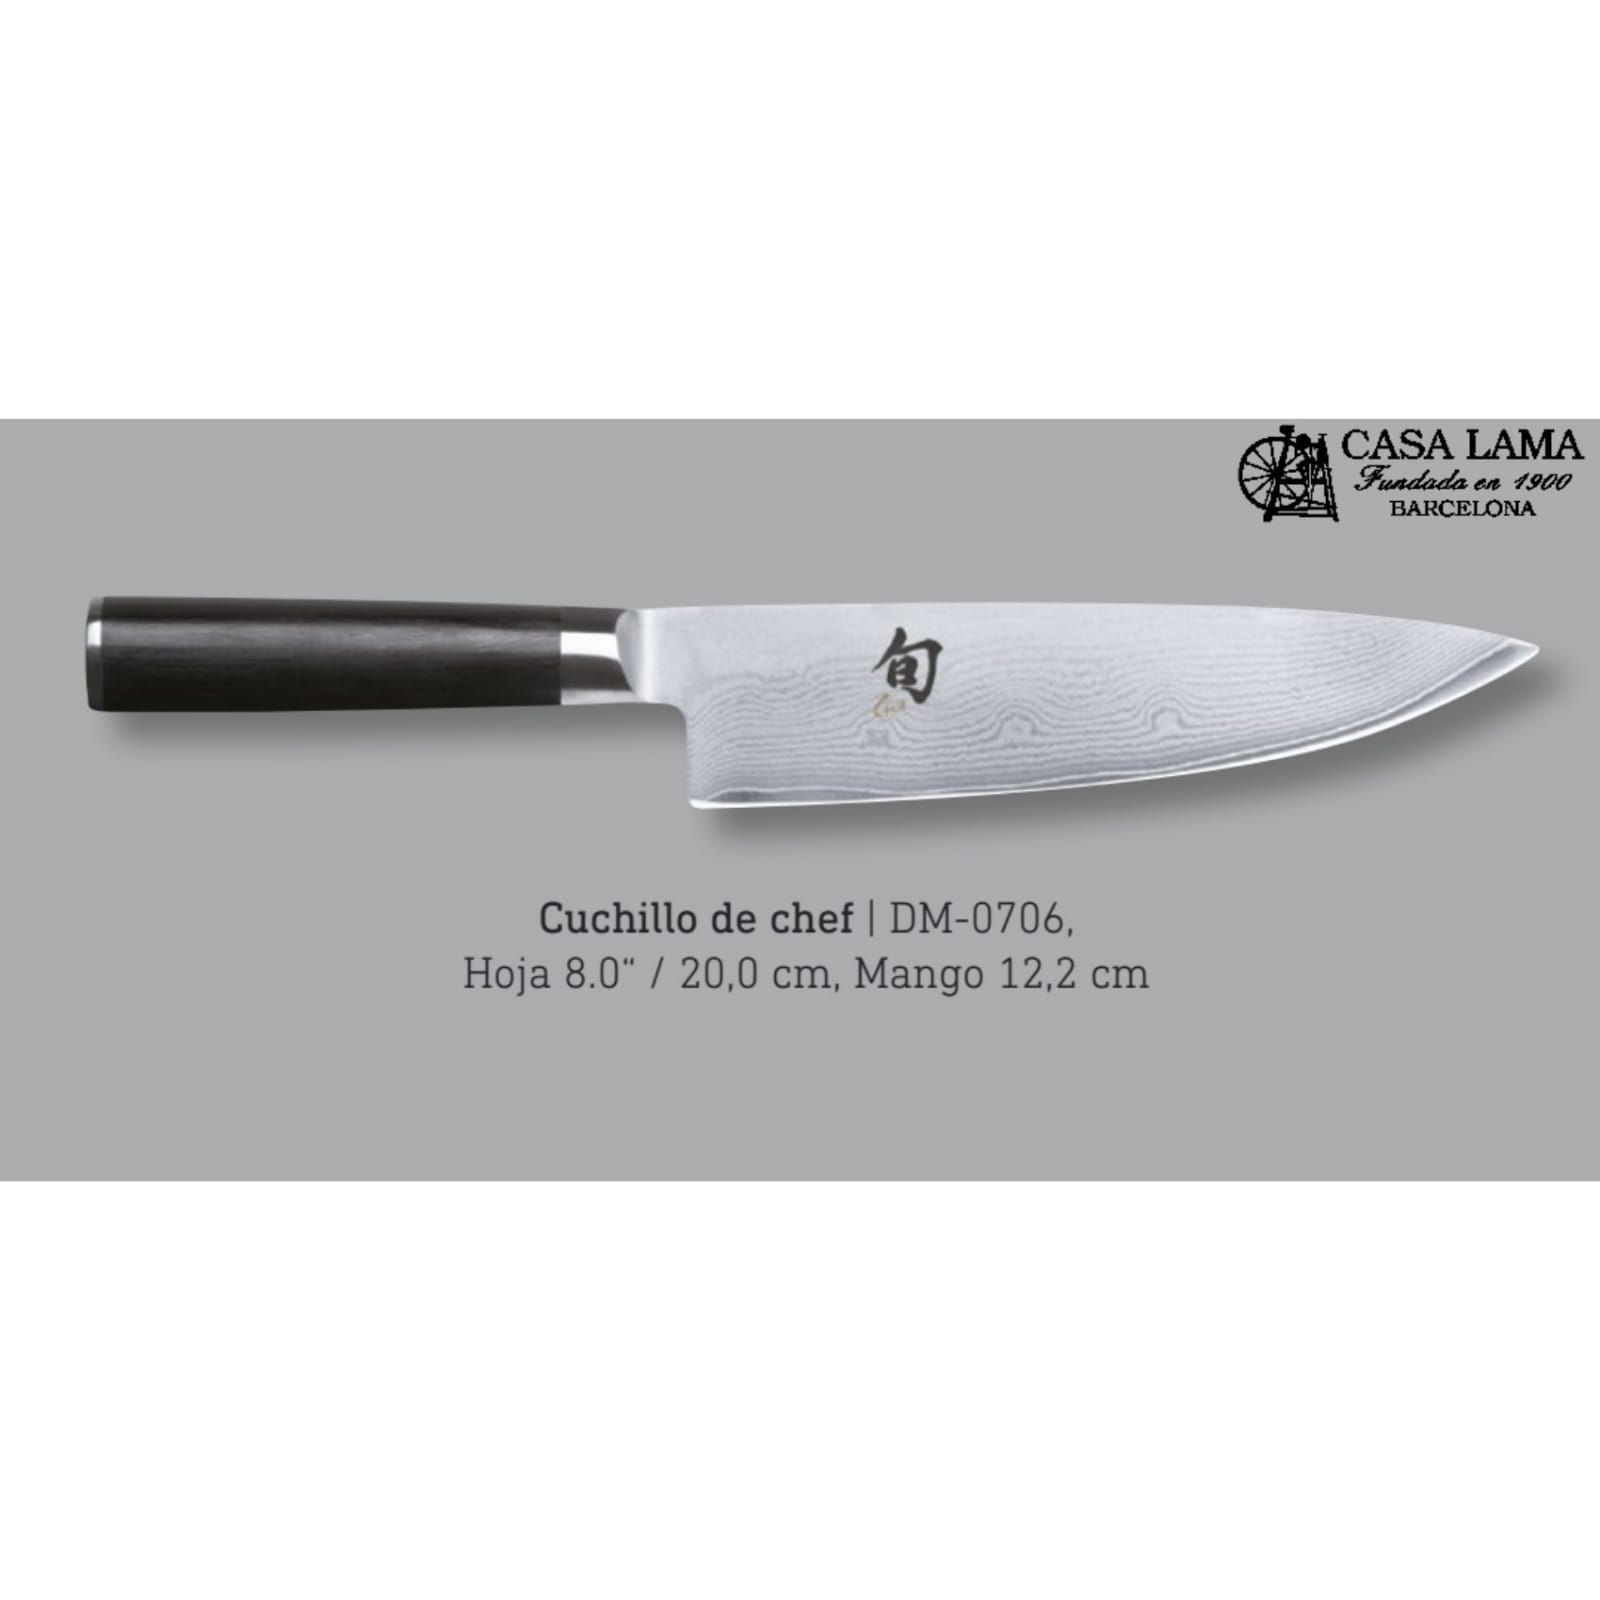 Cuchillo de cocina de Damasco cuchillo de chef